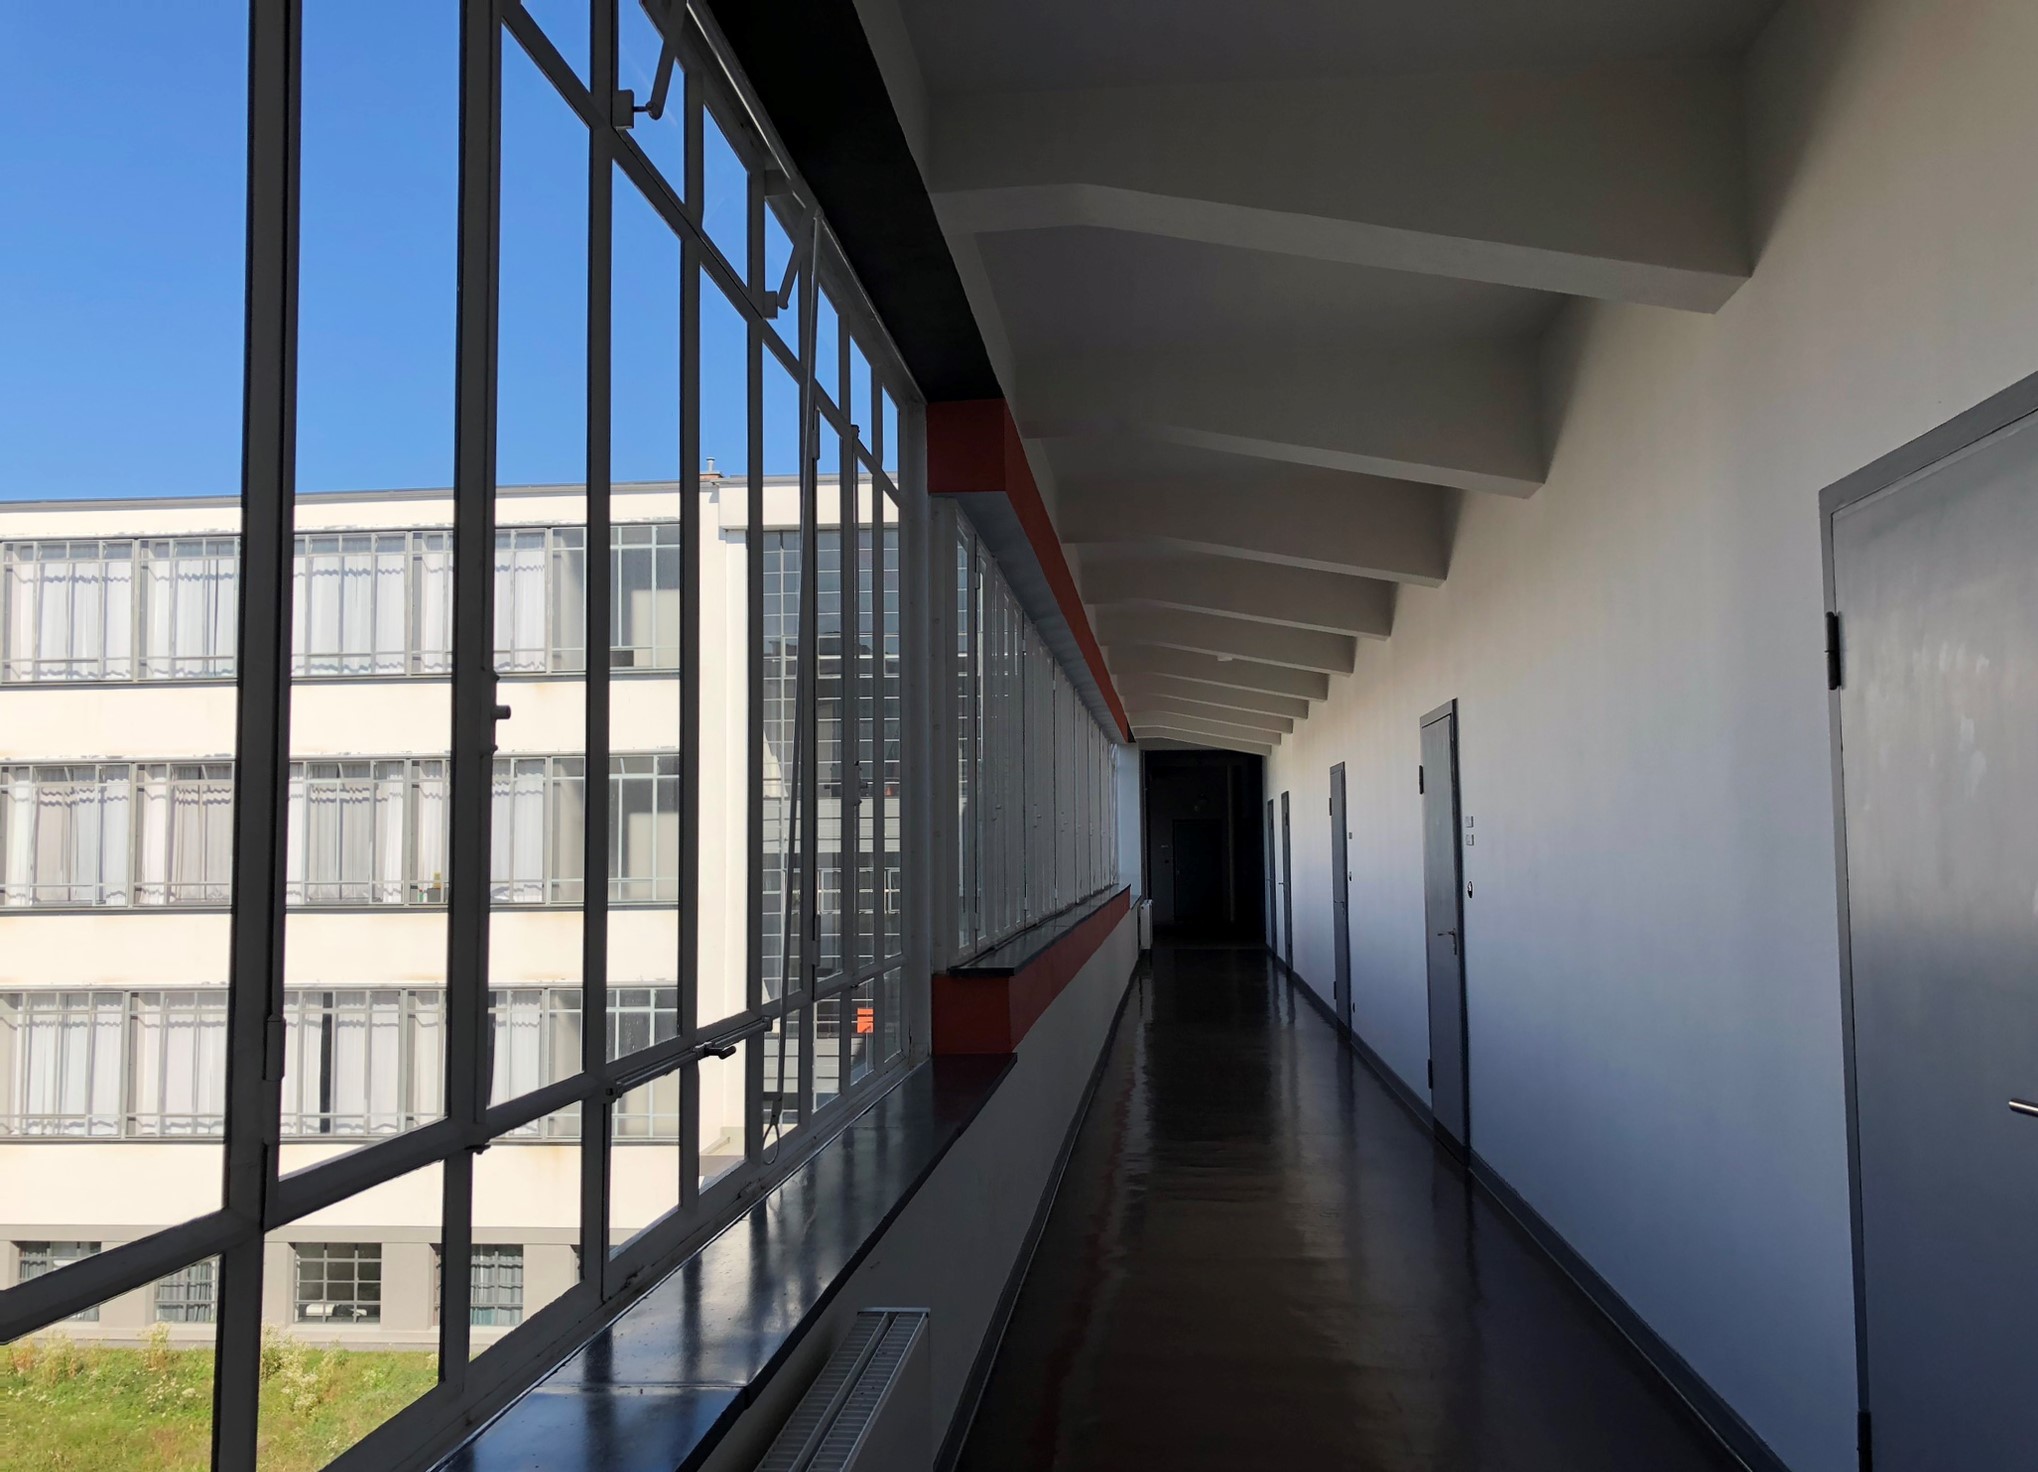 Fensterfront im Flur im Bauhausgebäude in Dessau